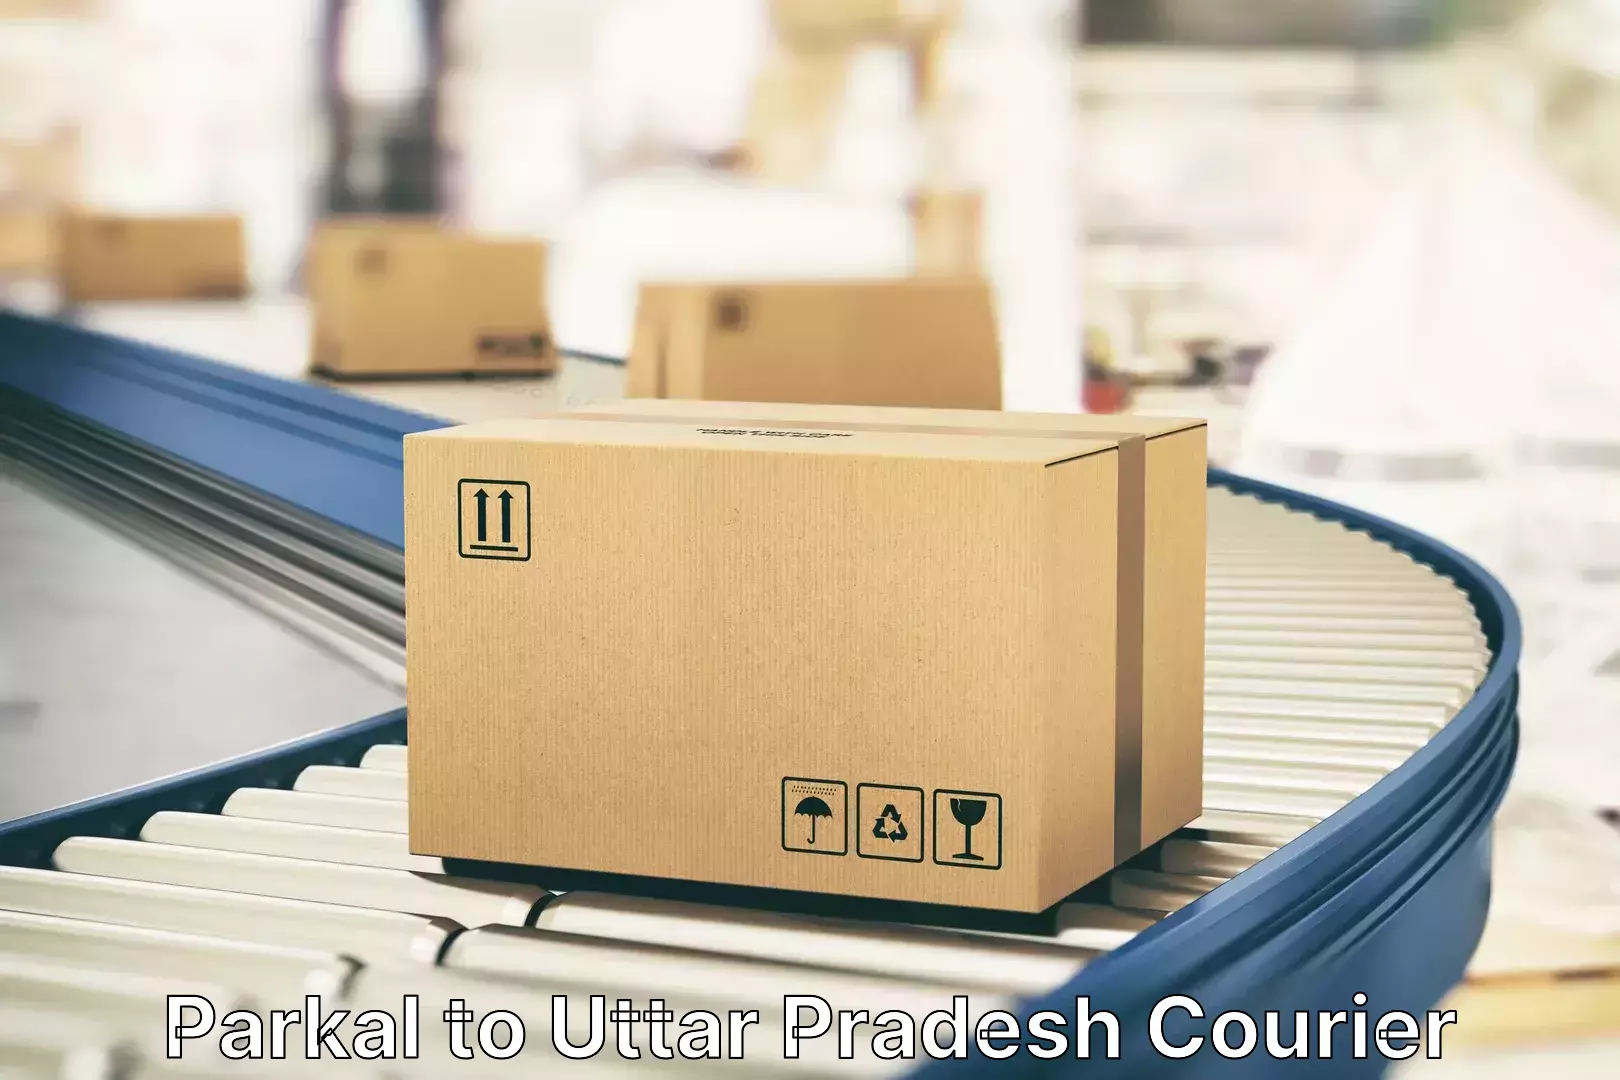 Luggage transport solutions Parkal to Uttar Pradesh